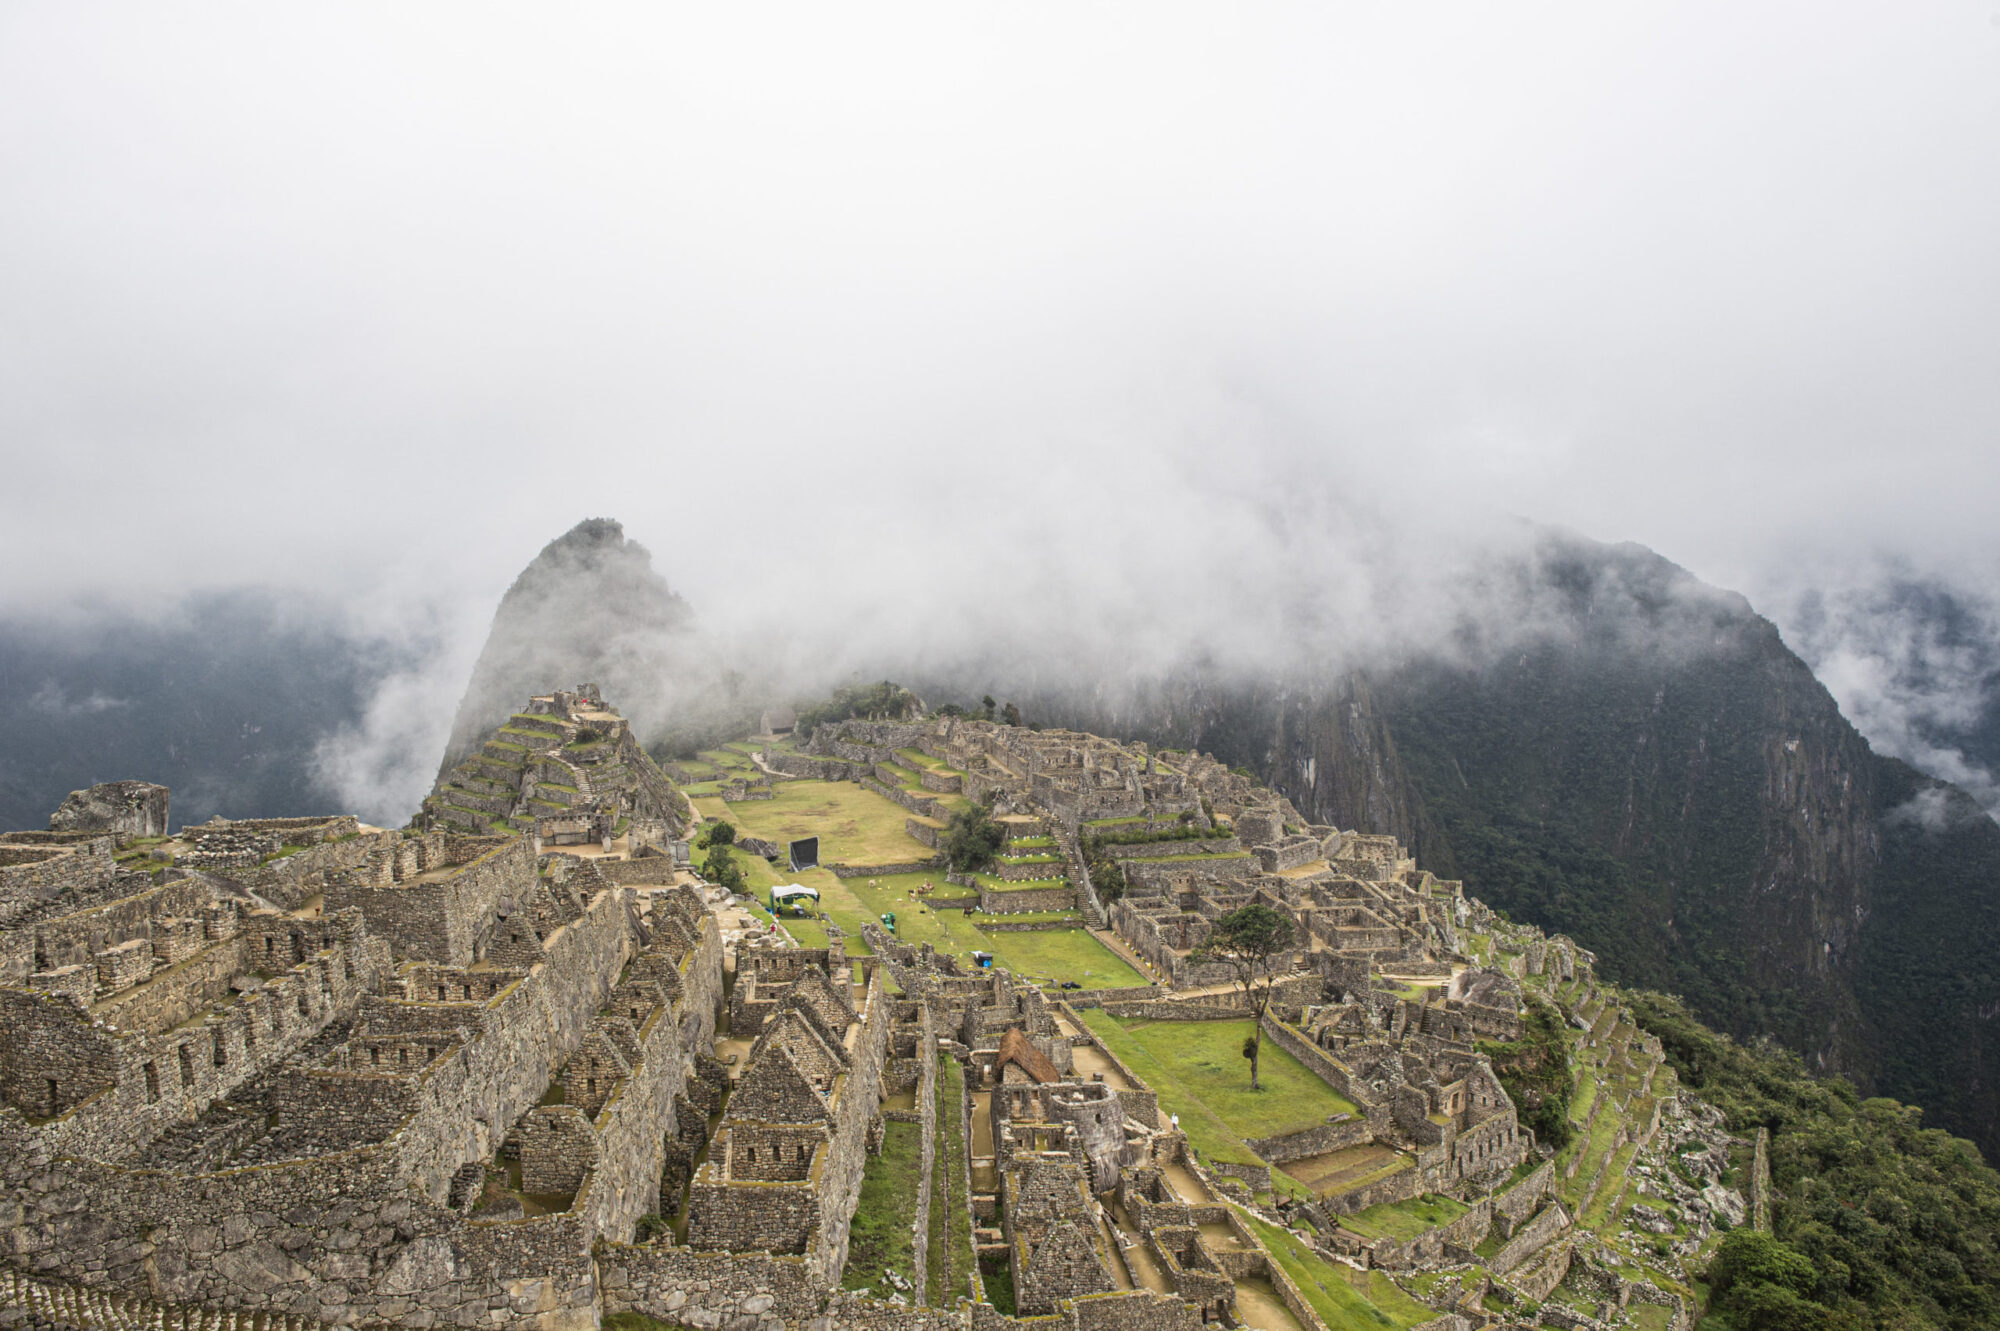 Cuatro turistas murieron y 16 resultaron heridos en un accidente en Perú tras visitar Machu Picchu